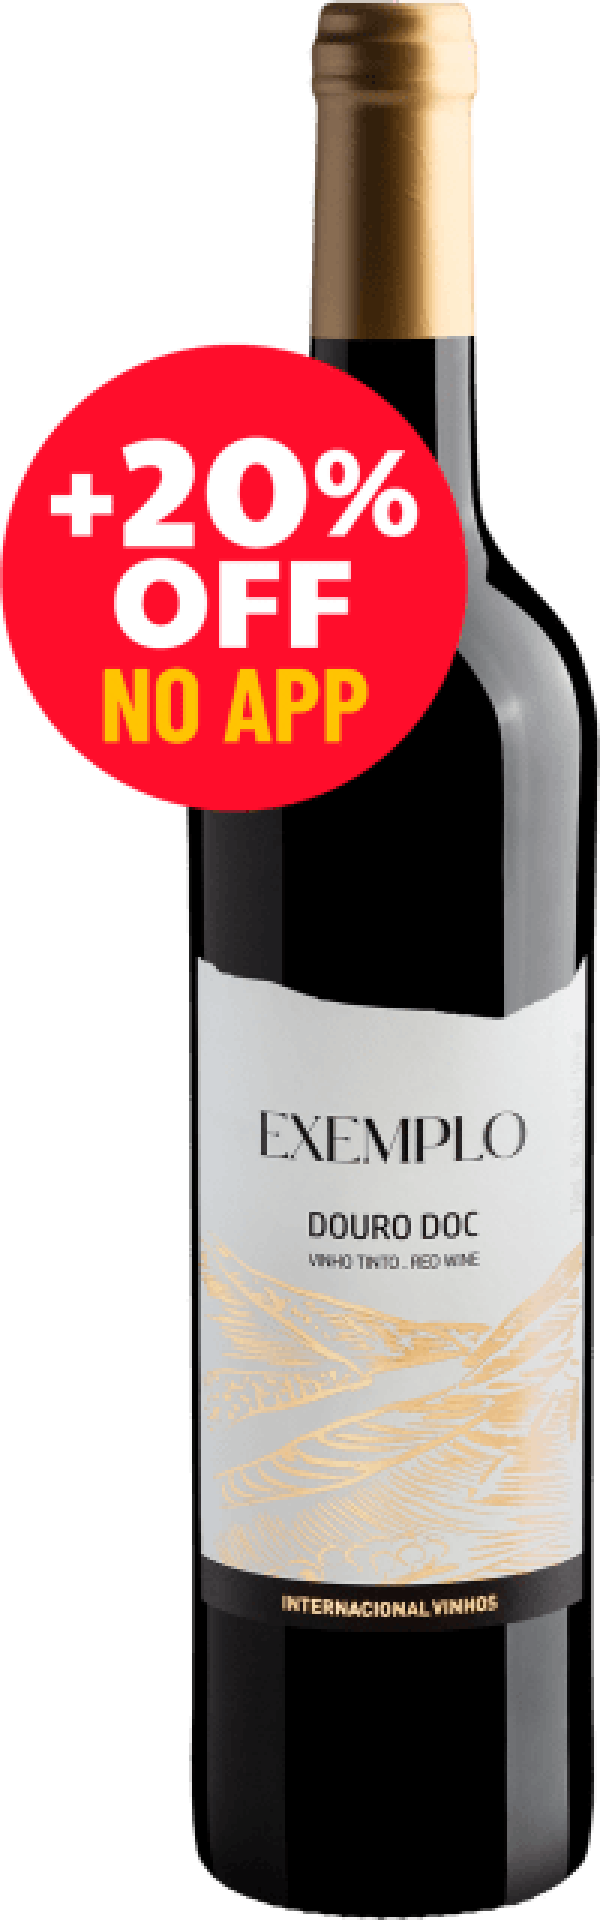 Exemplo DOC Douro 2020